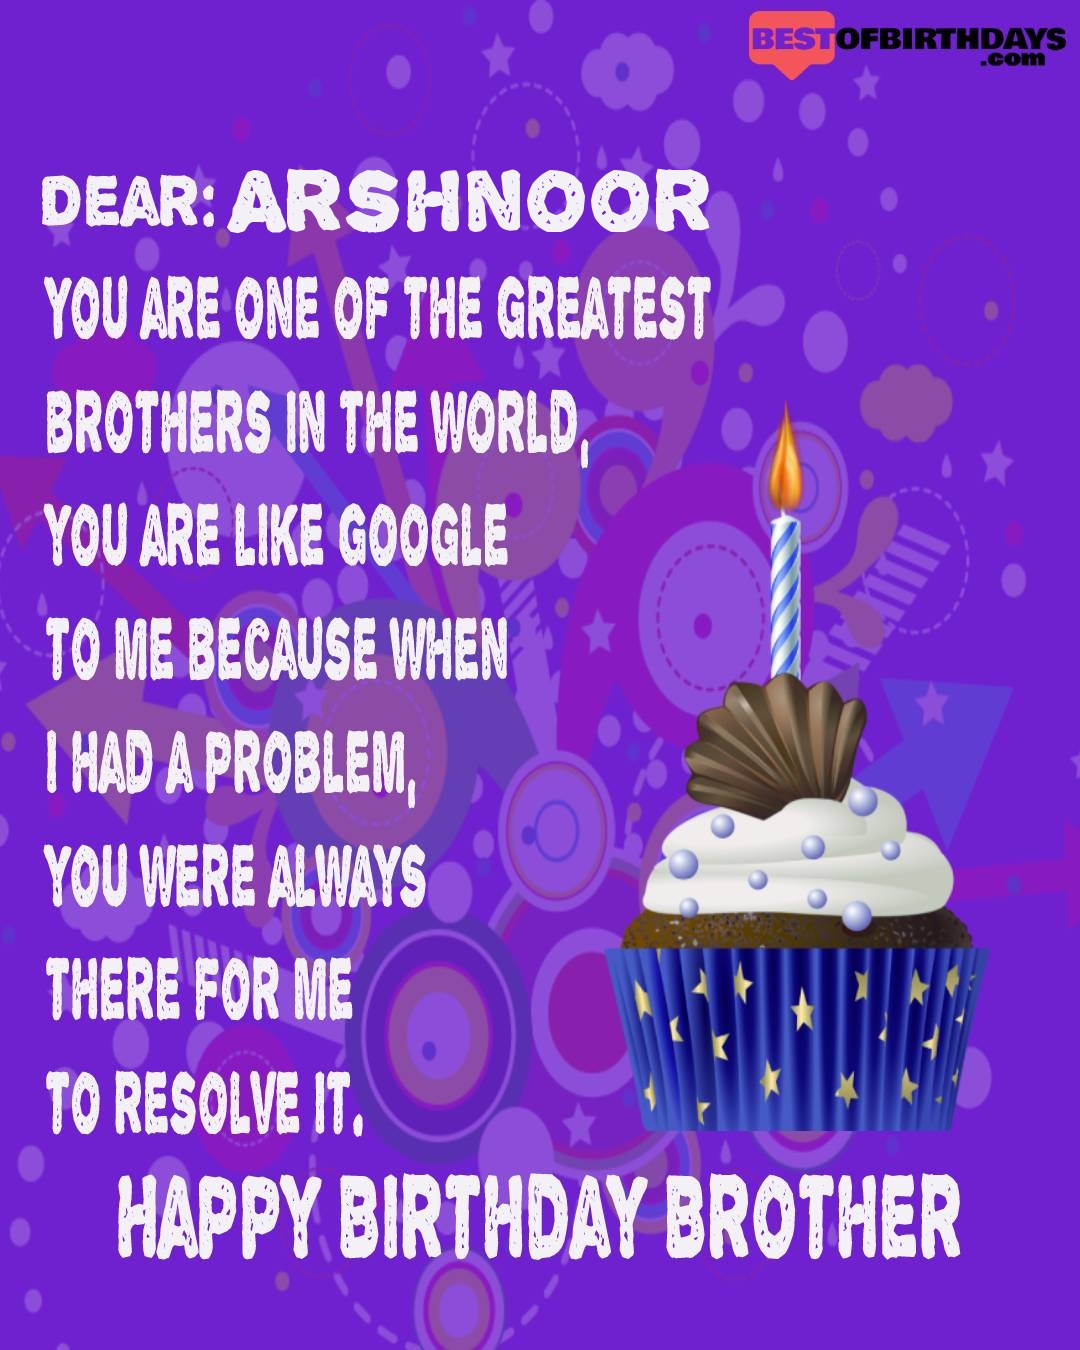 Happy birthday arshnoor bhai brother bro